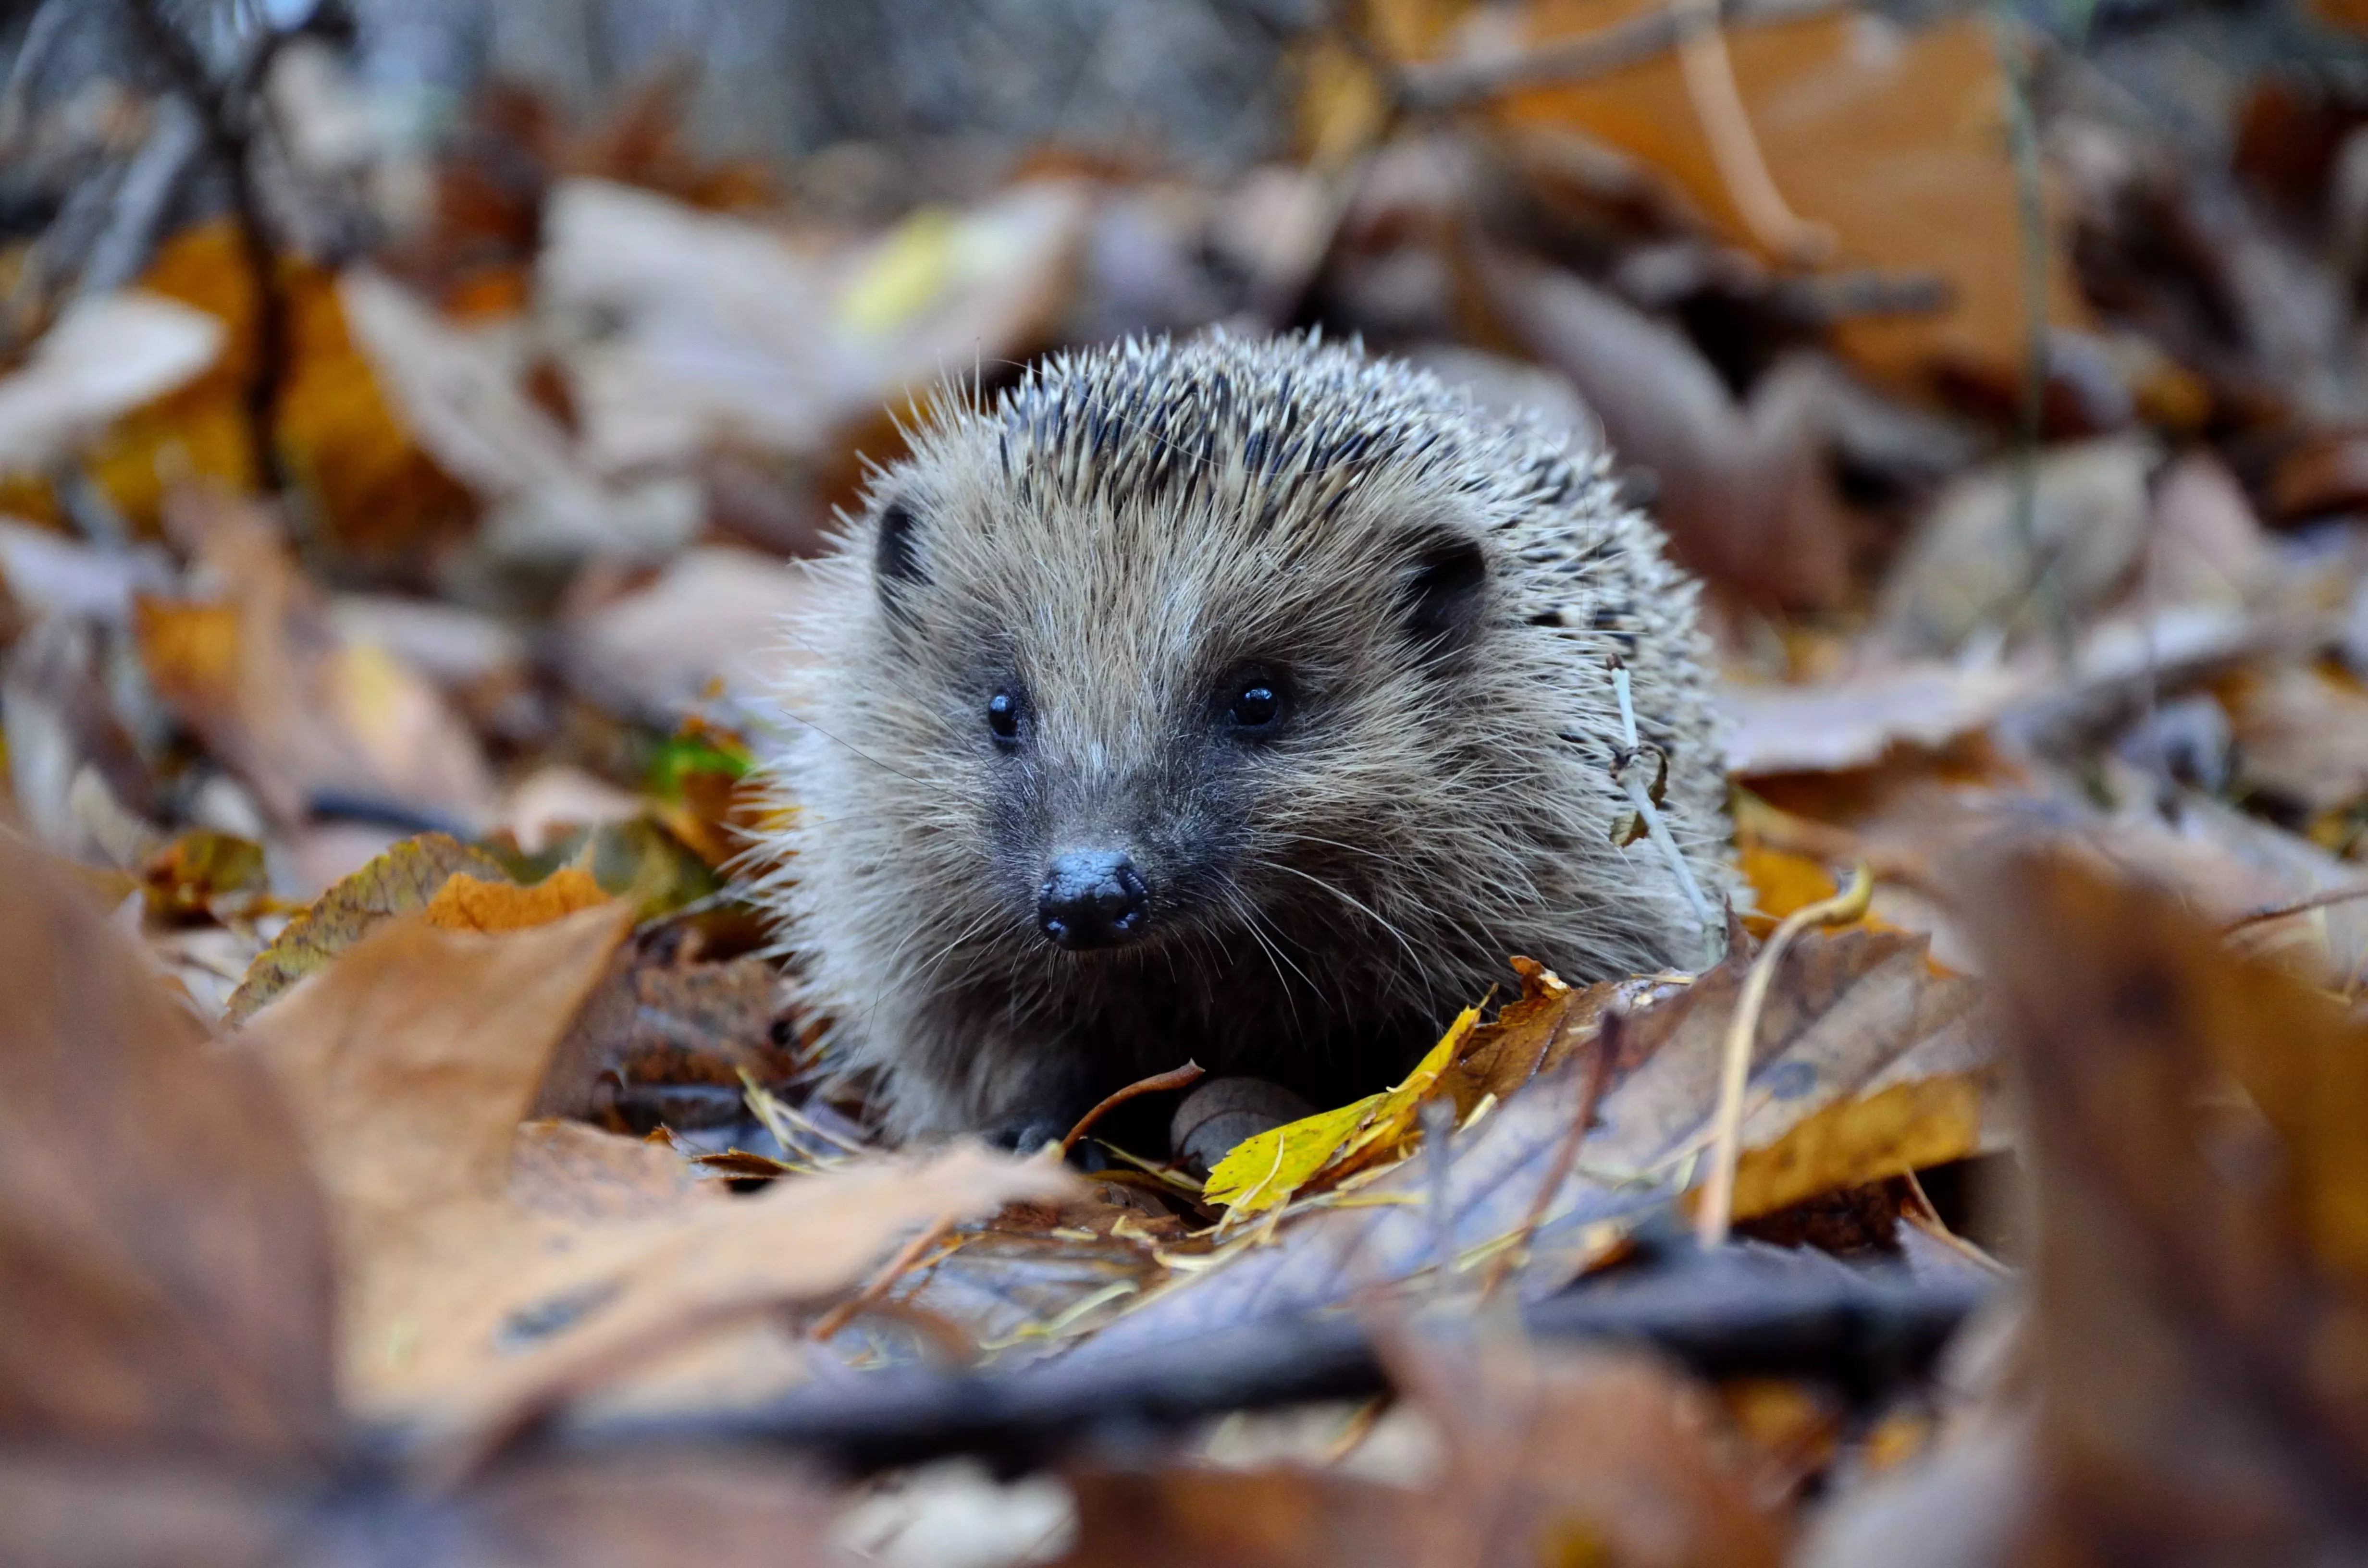 Hedgehog in a leaf pile